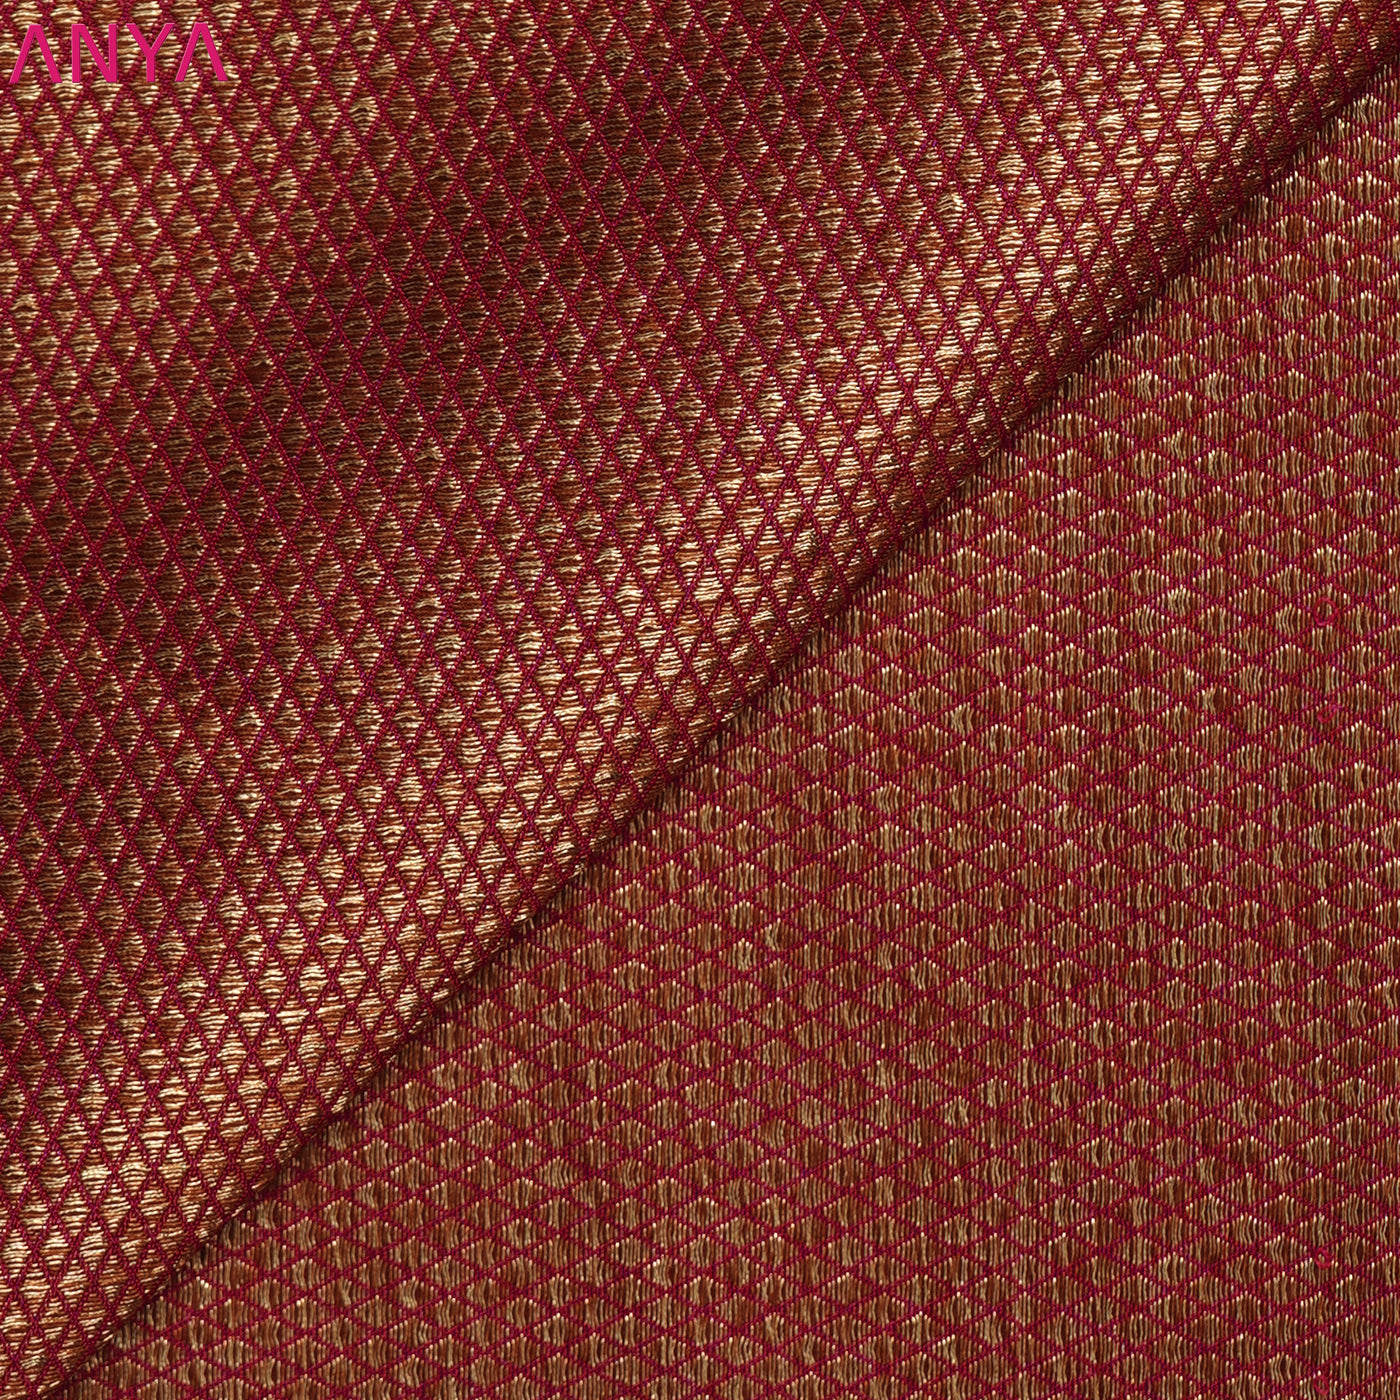 Red Banarasi Silk Fabric with Getti Self Design